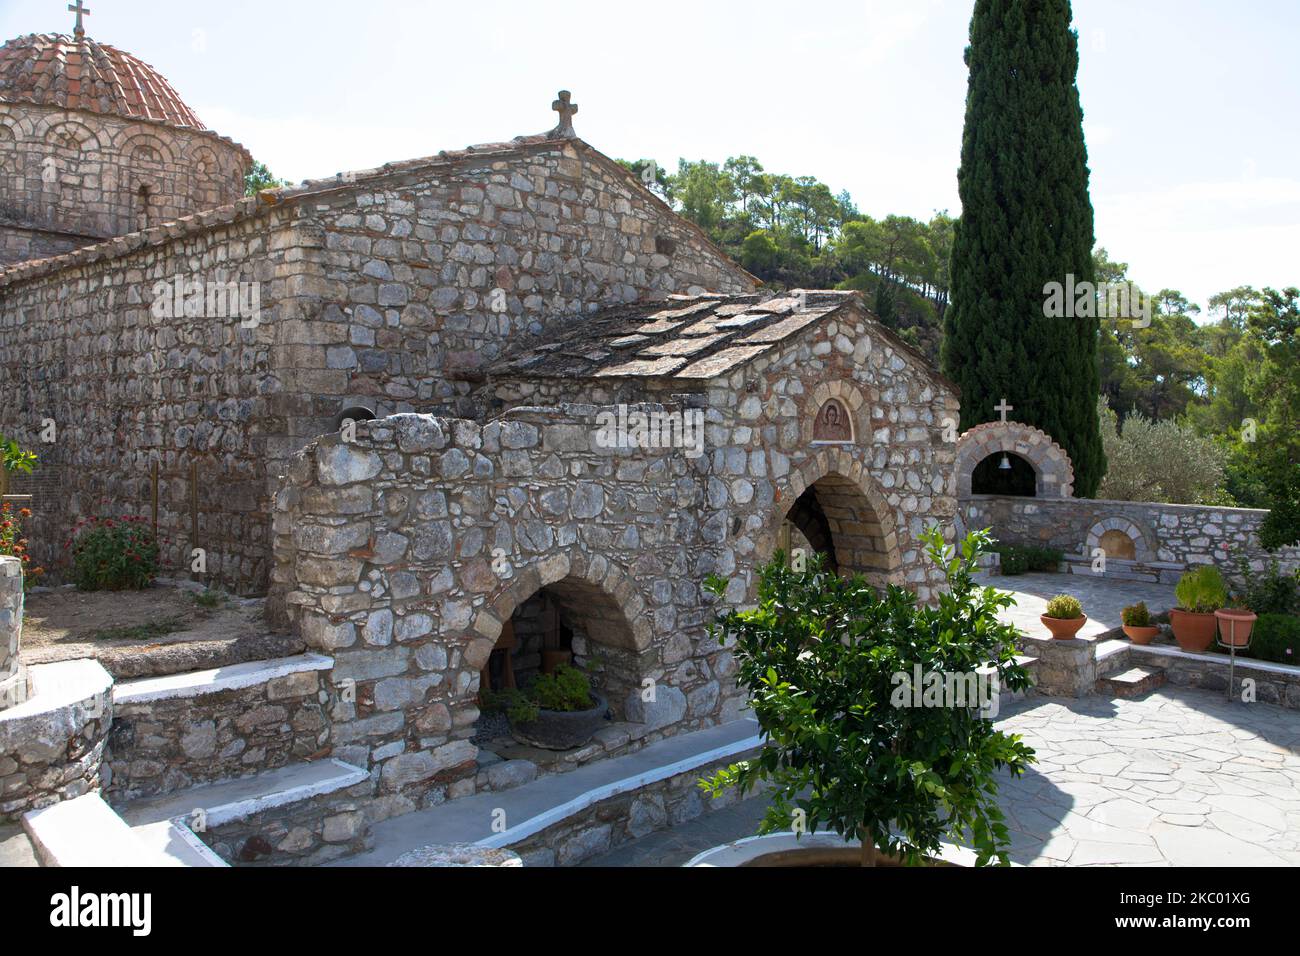 Das Kloster Moni Thari ist eines der wichtigsten religiösen Denkmäler auf der Insel Rhodos. Laerma, Rhodos, Dodekanes, Südägäis, Griechenland Stockfoto